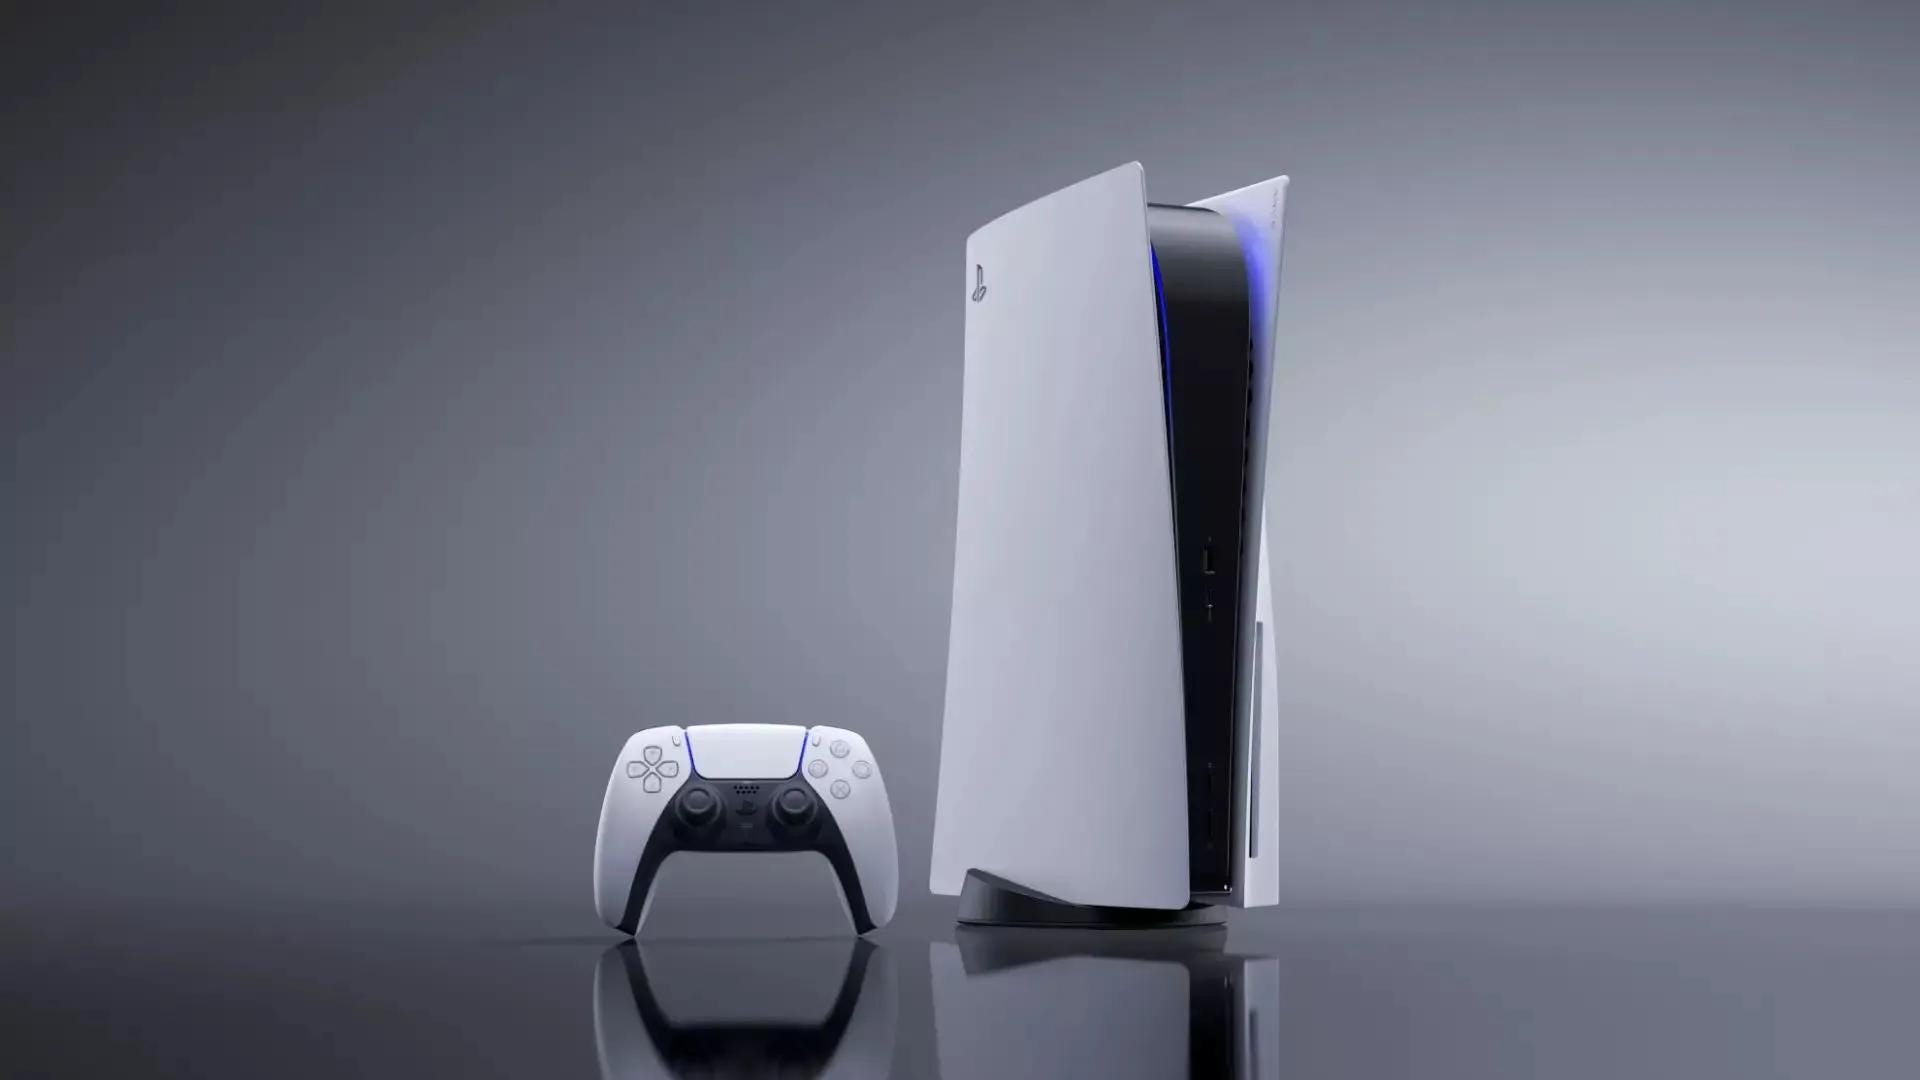 PlayStation Plus Extra - ACCOUNT valid till September 2024